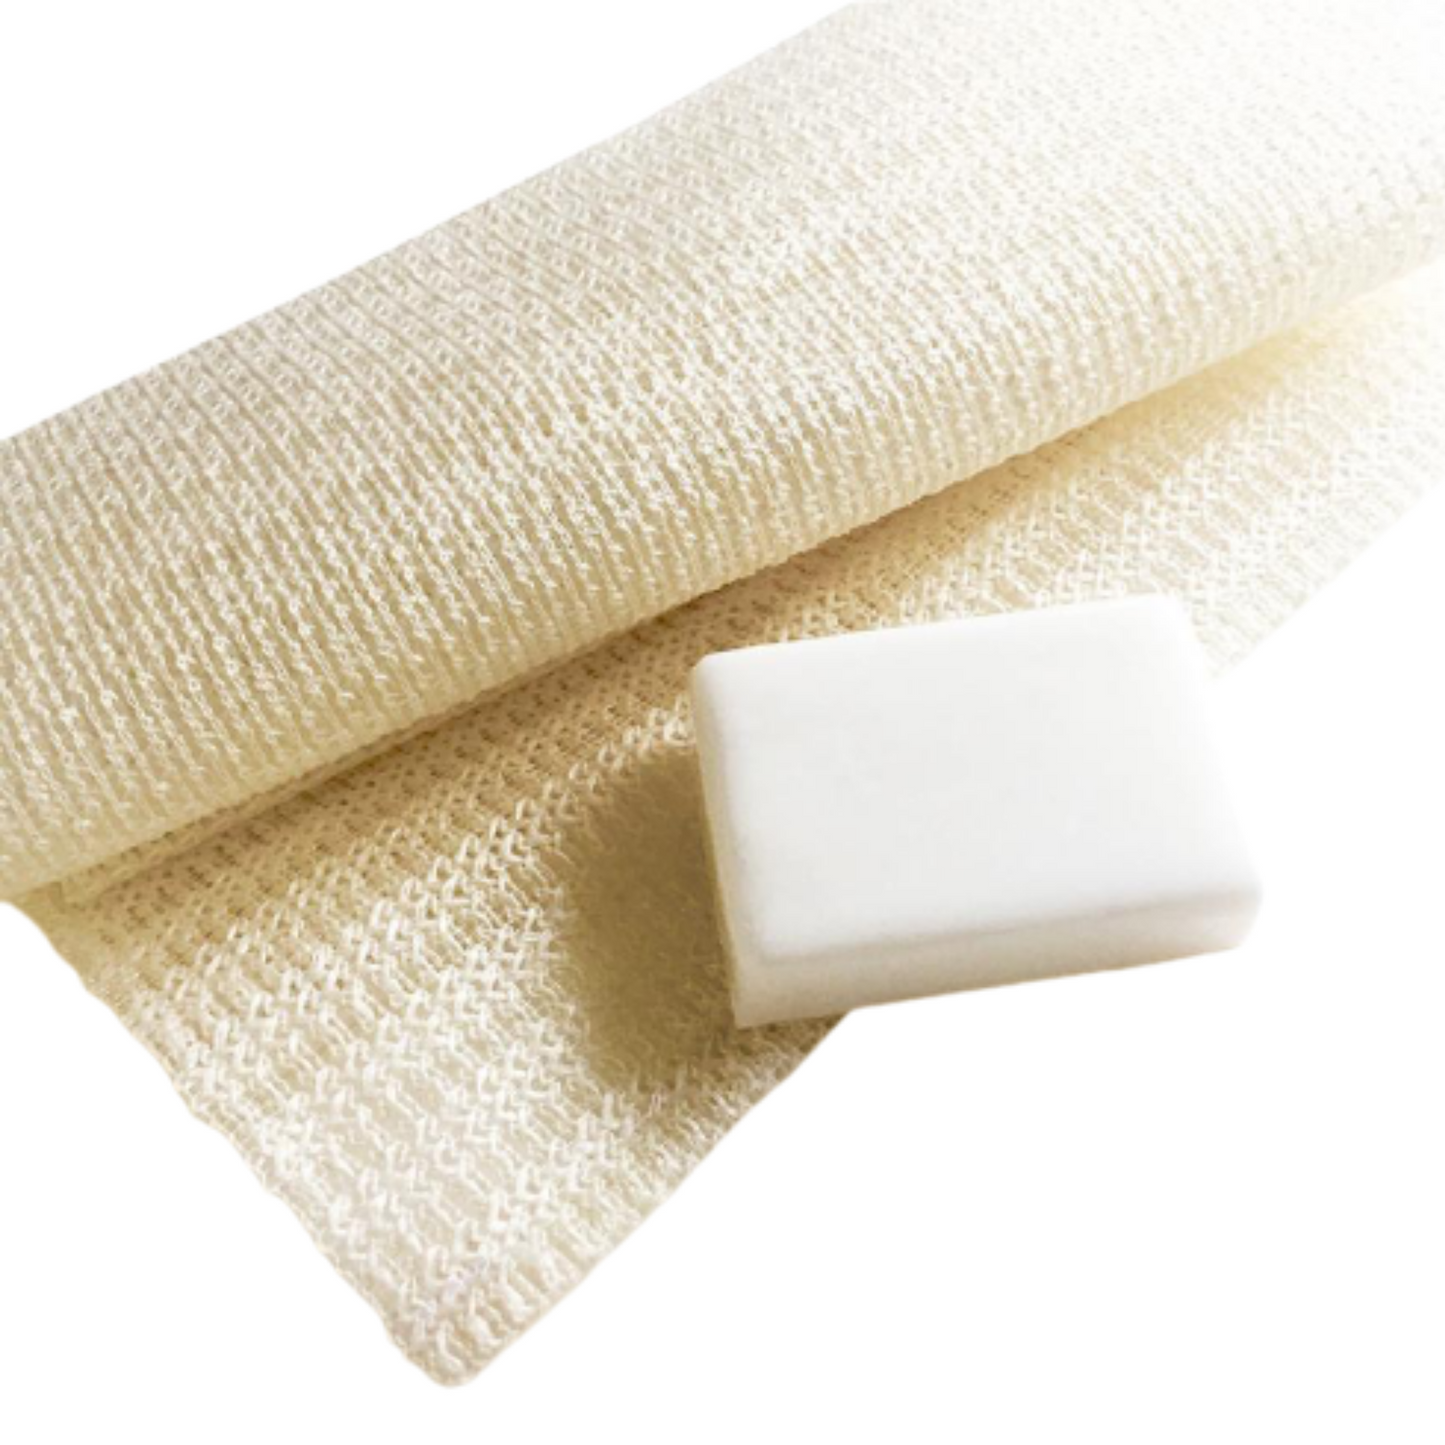 Primary Image of Kinu Silk Towel